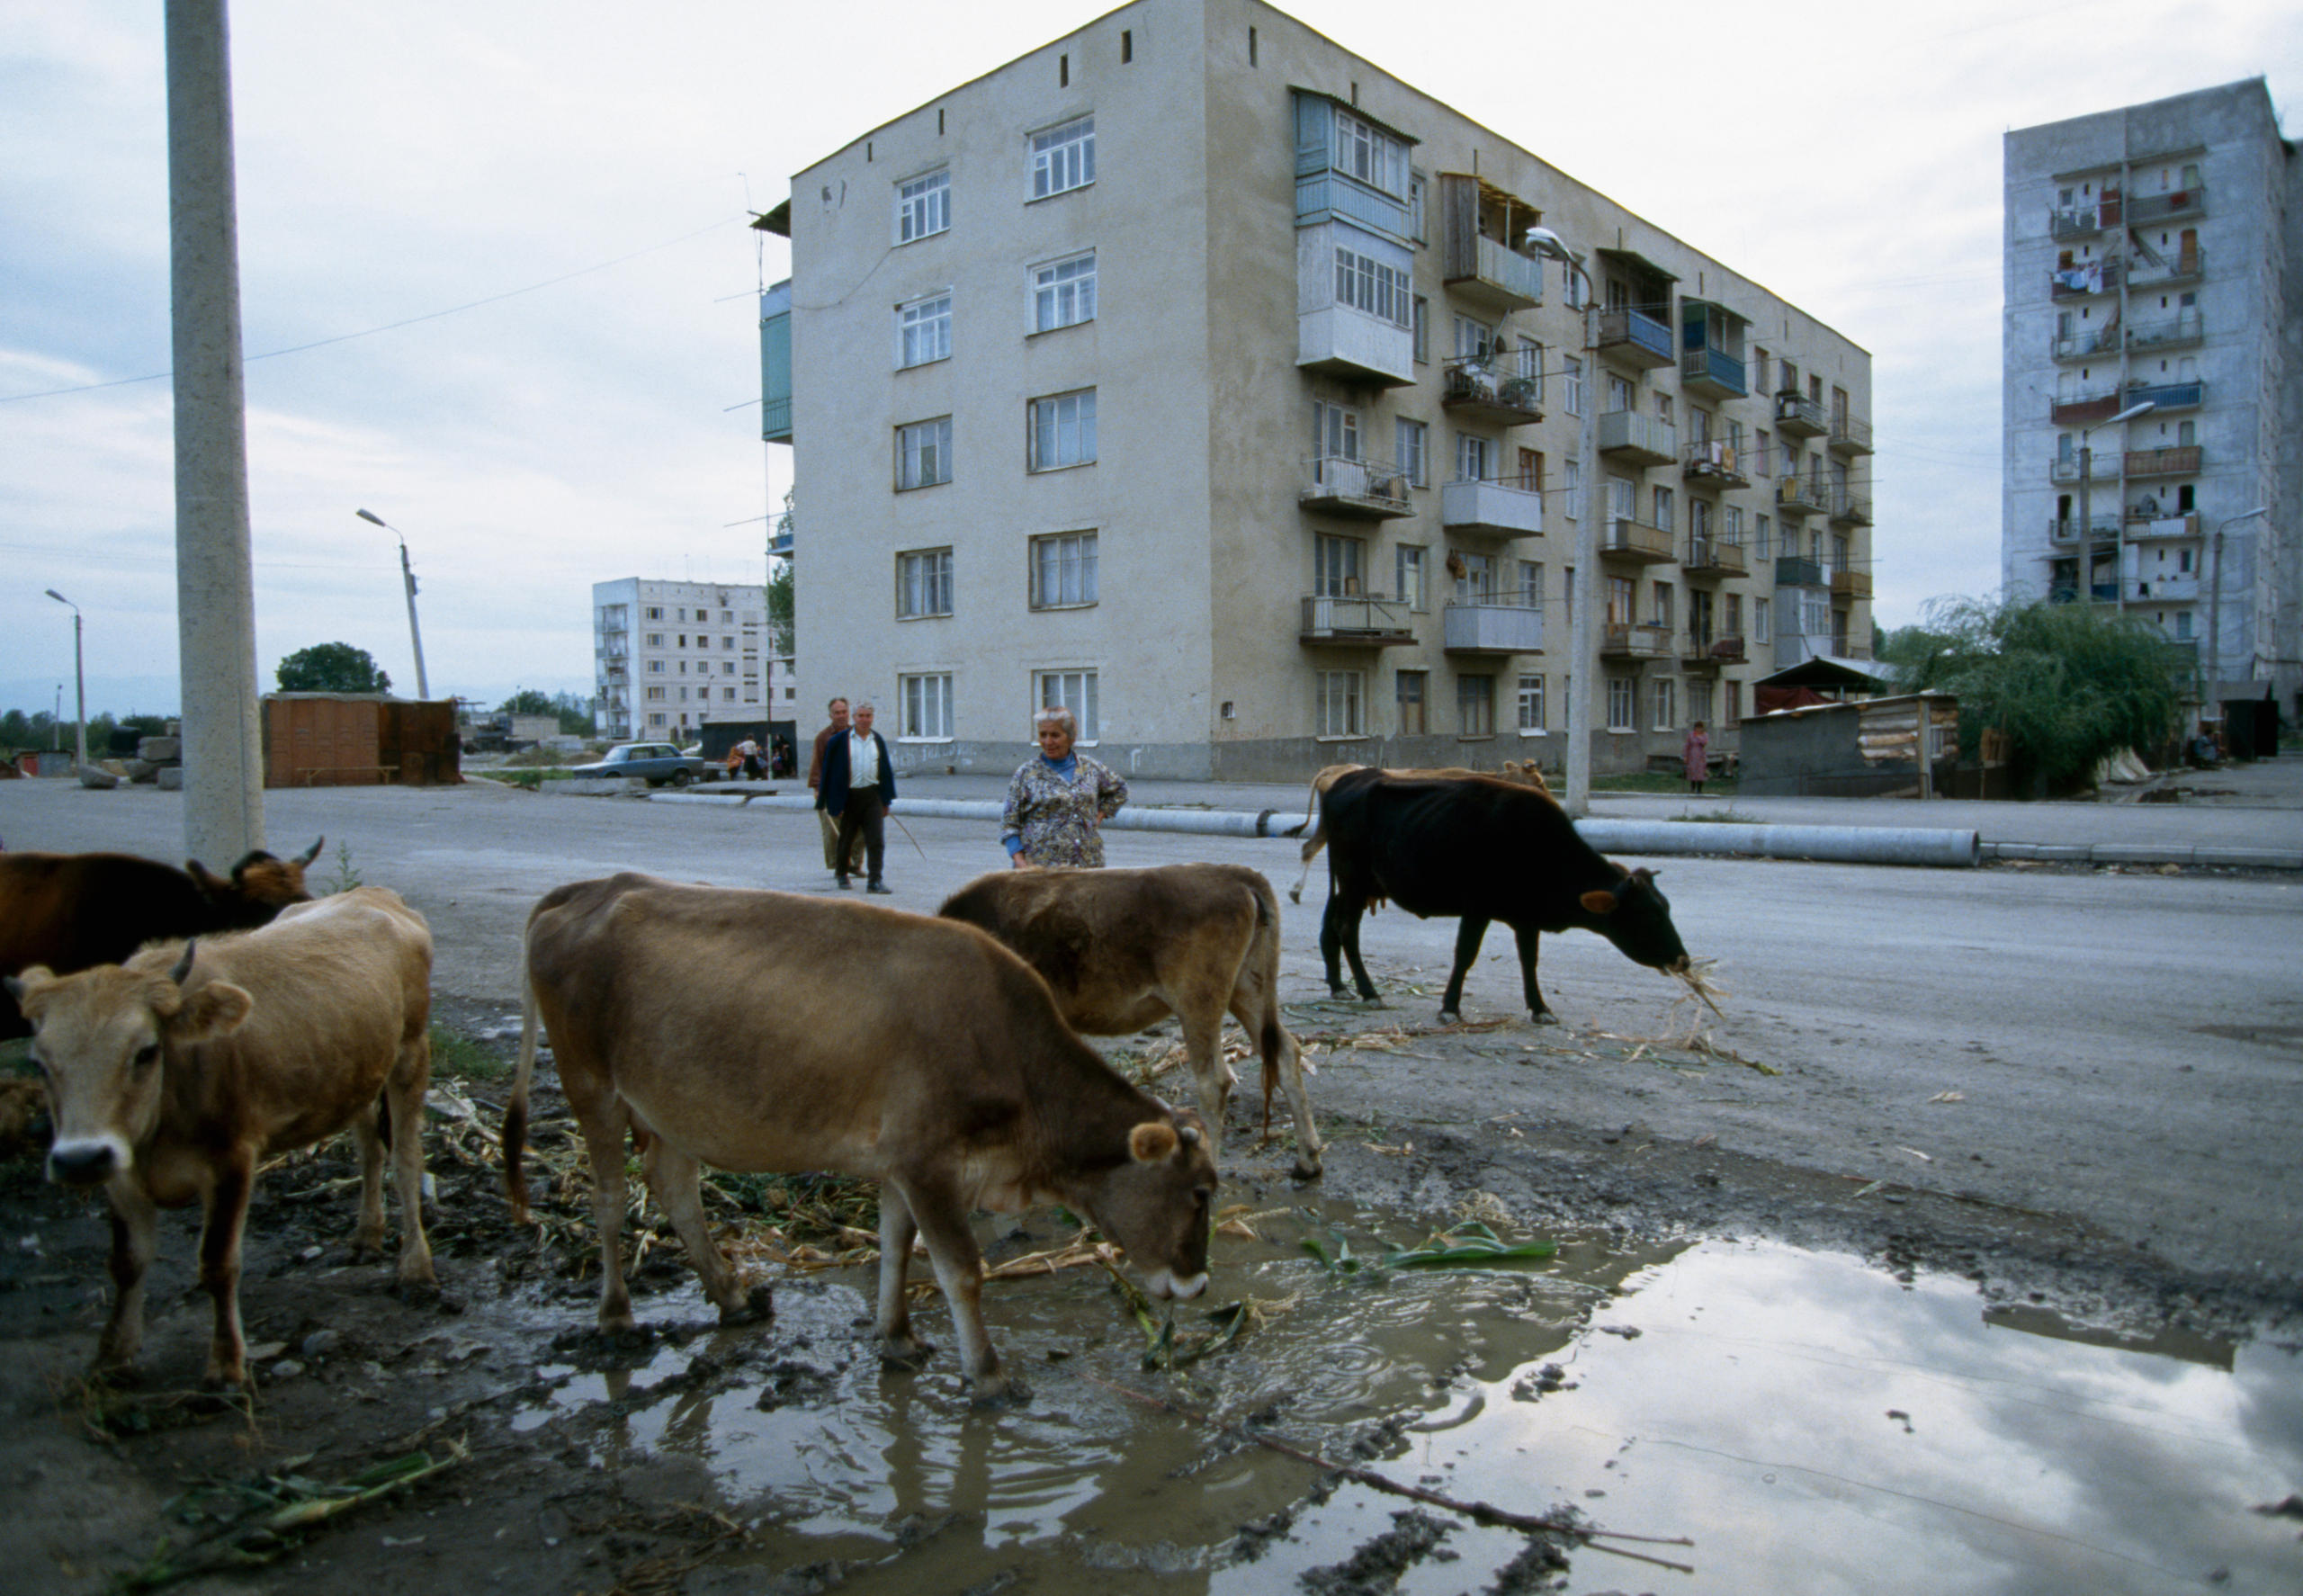 Vacas en la calle de una ciudad